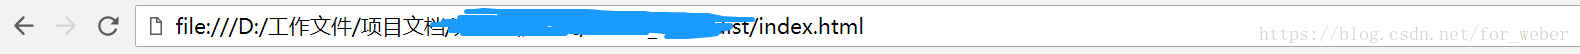 解决Vue项目打包后打开index . html页面显示空白以及图片路径错误的问题